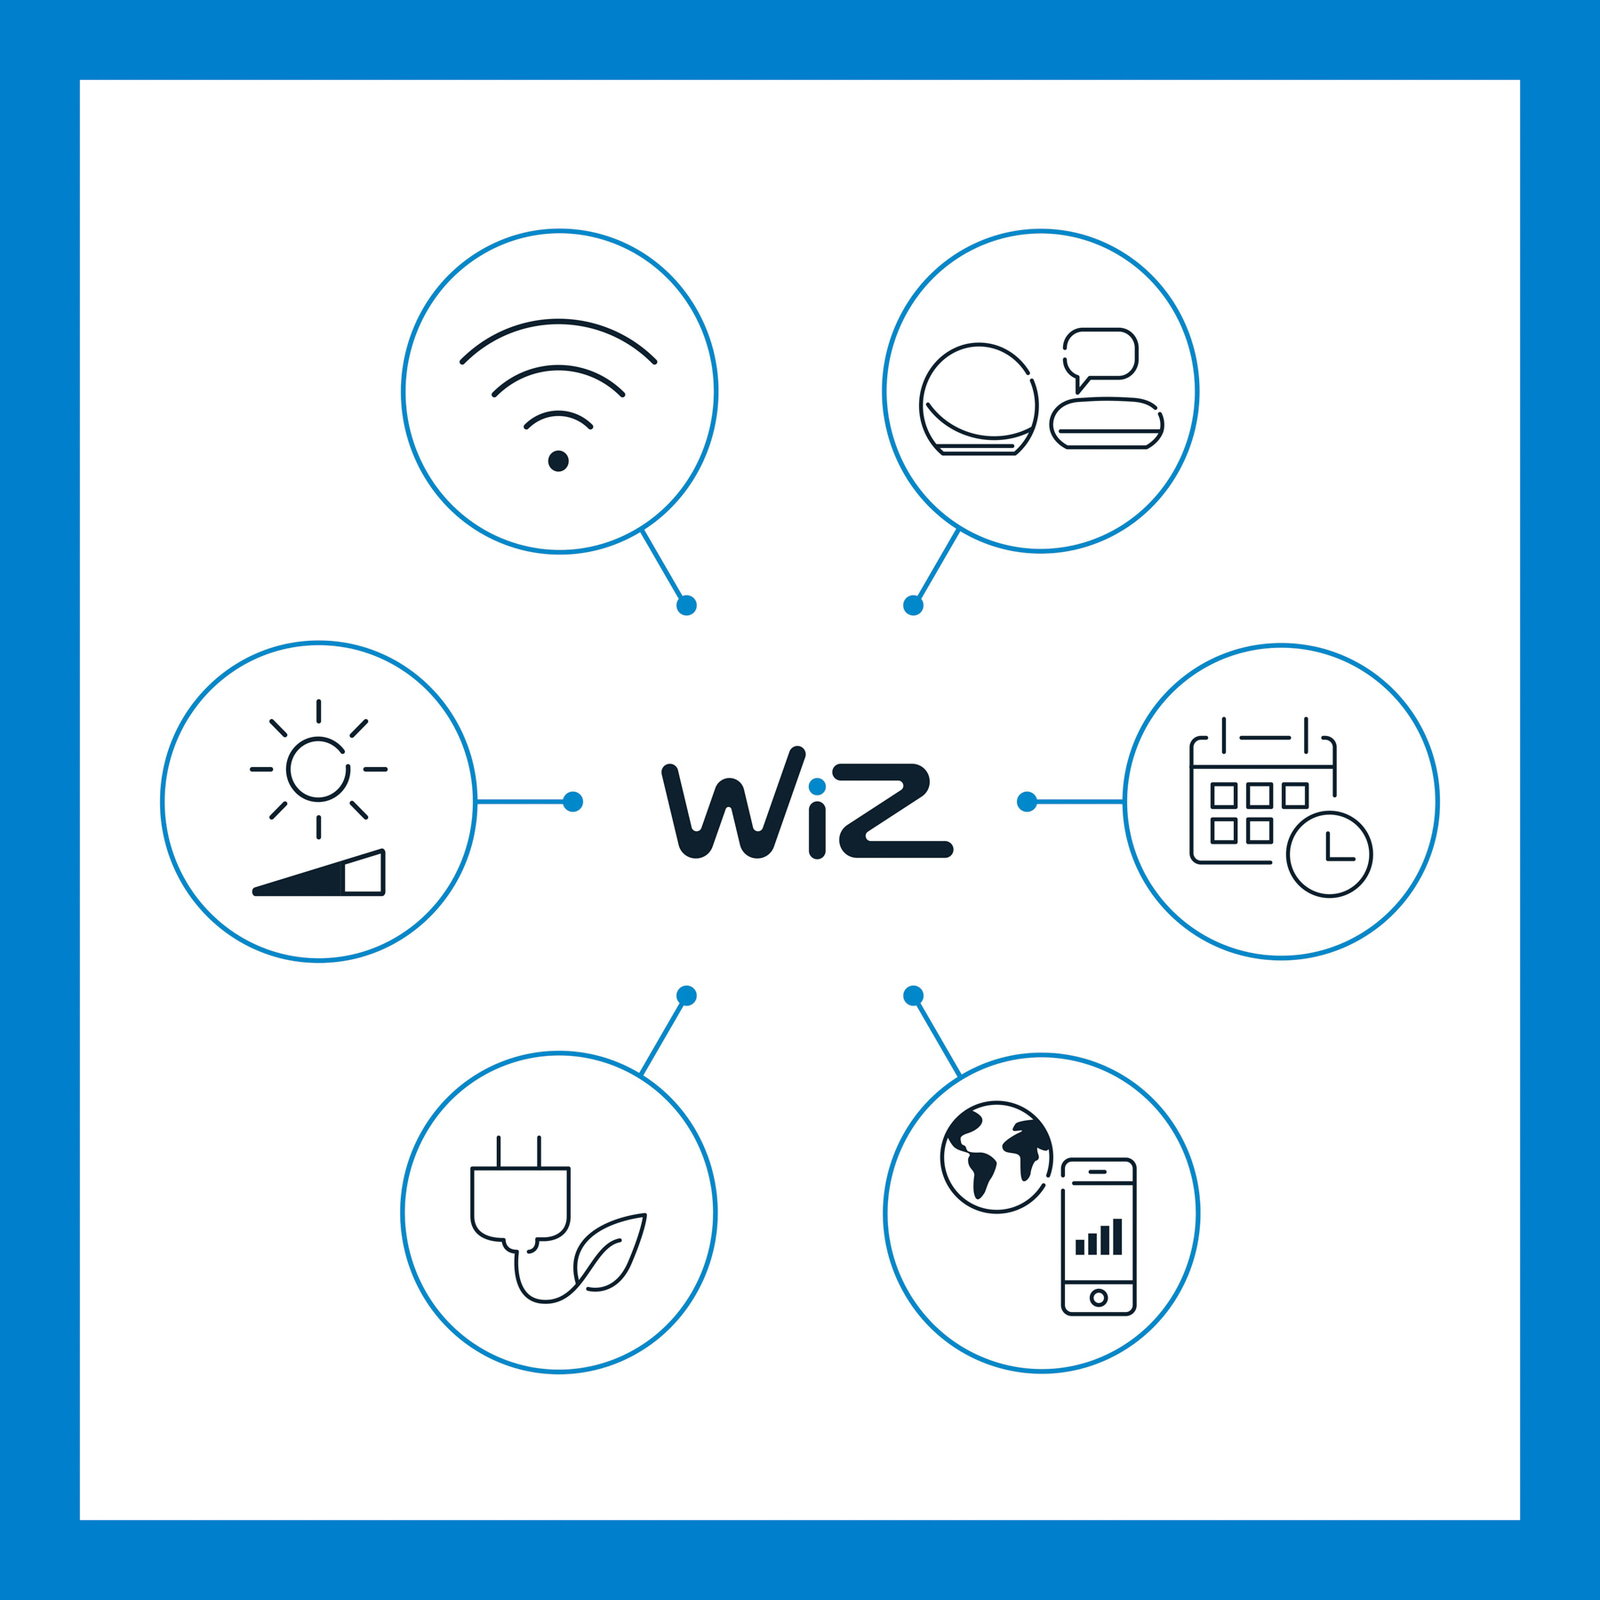 WiZ A60 bombilla LED Wi-Fi E27 7W CCT